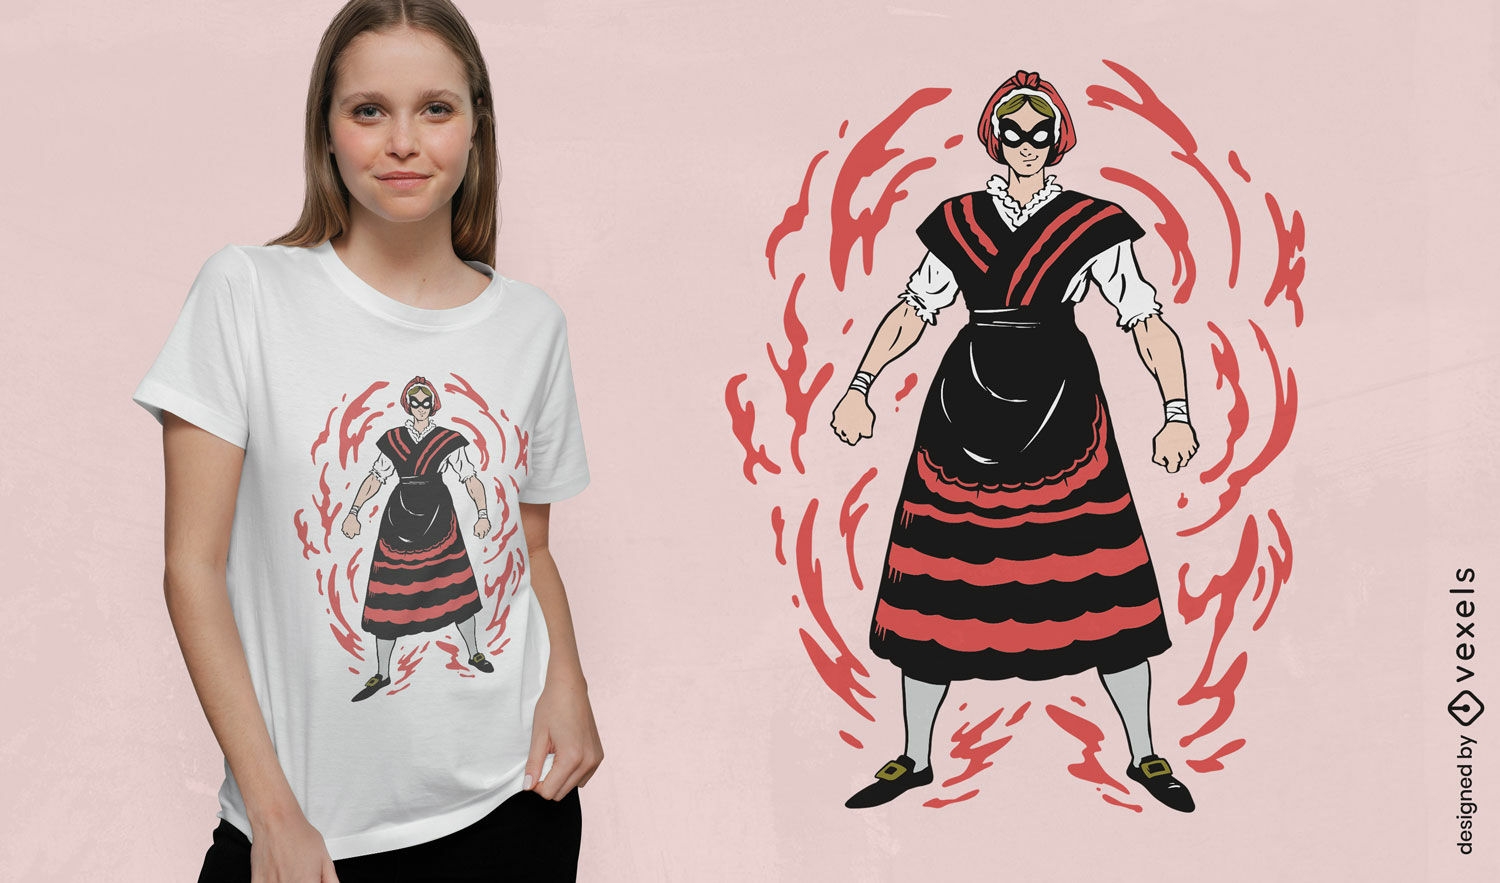 Diseño de camiseta chica gallega superhéroe